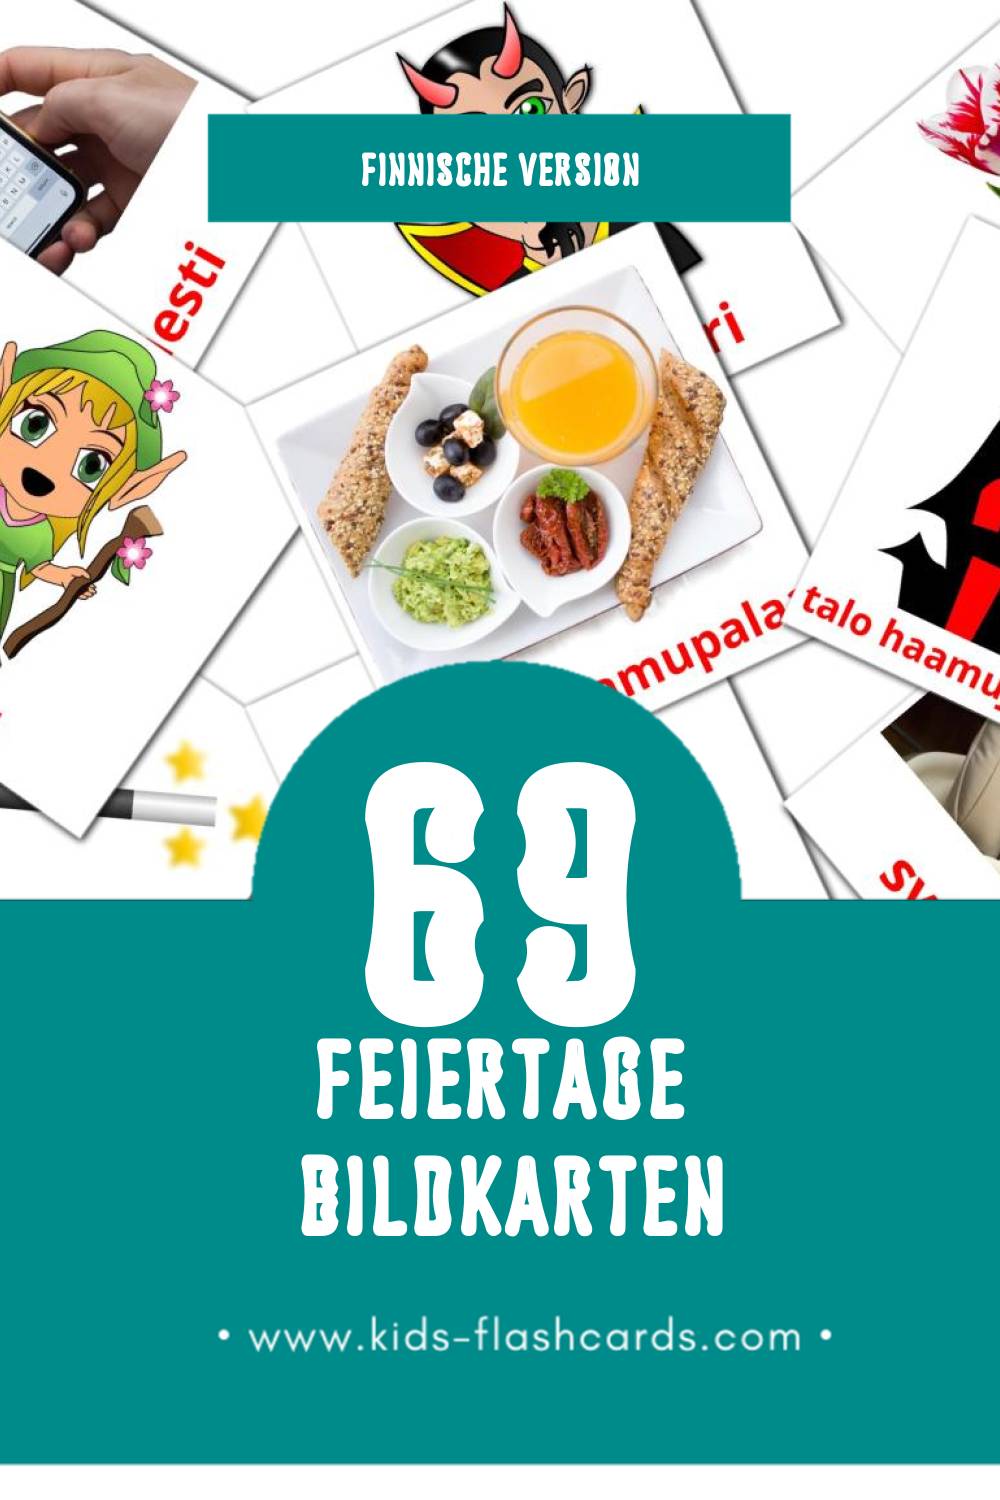 Visual Lomat Flashcards für Kleinkinder (118 Karten in Finnisch)